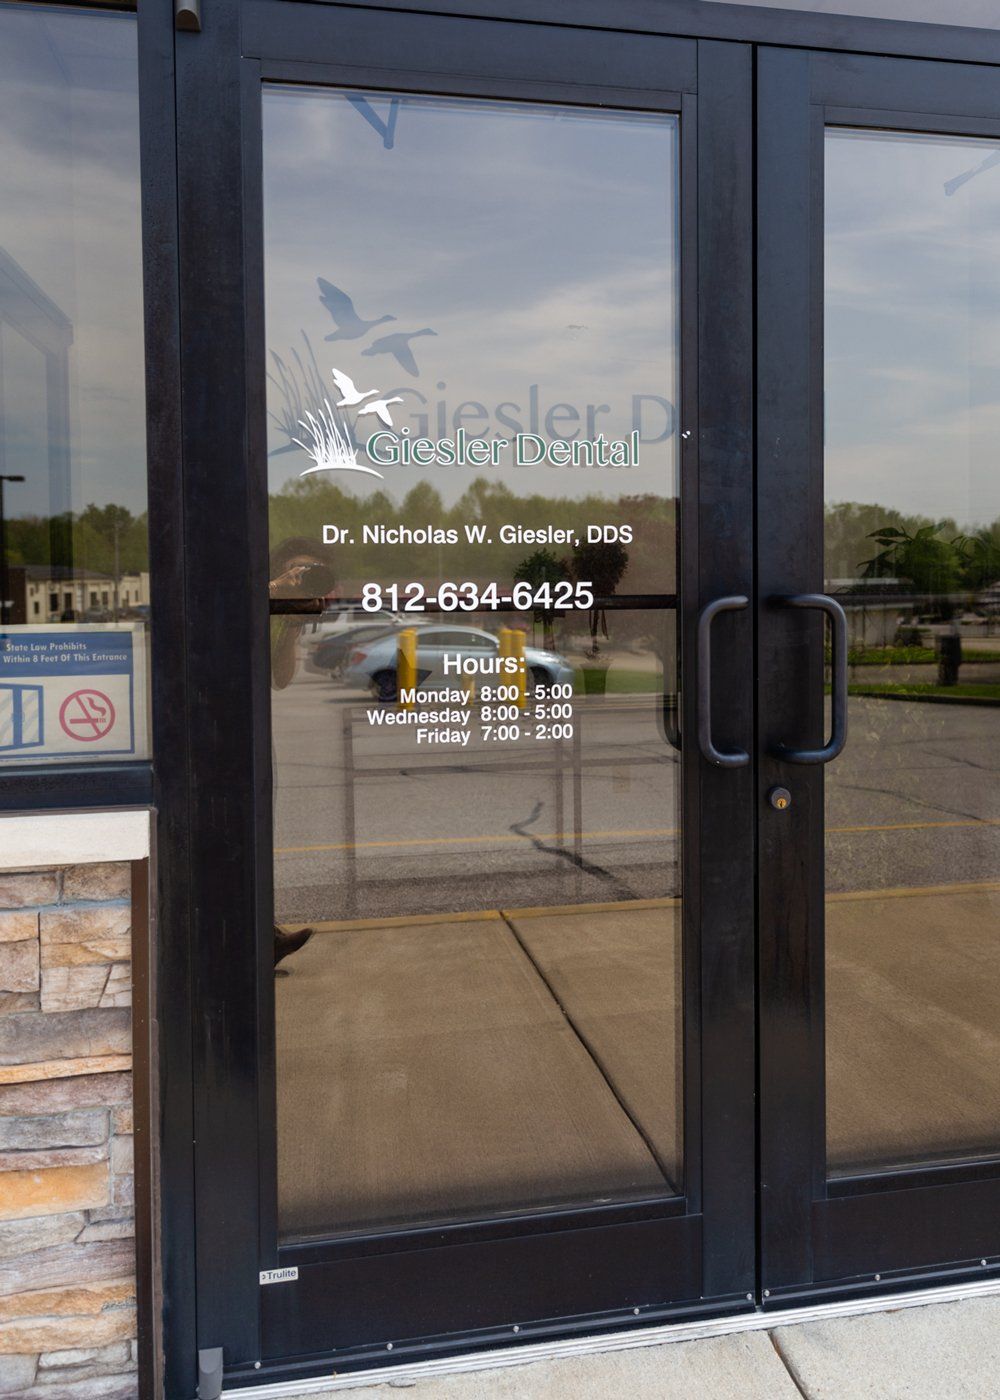 Composite Dental Bonding — Dentist Office Front in Jasper, IN